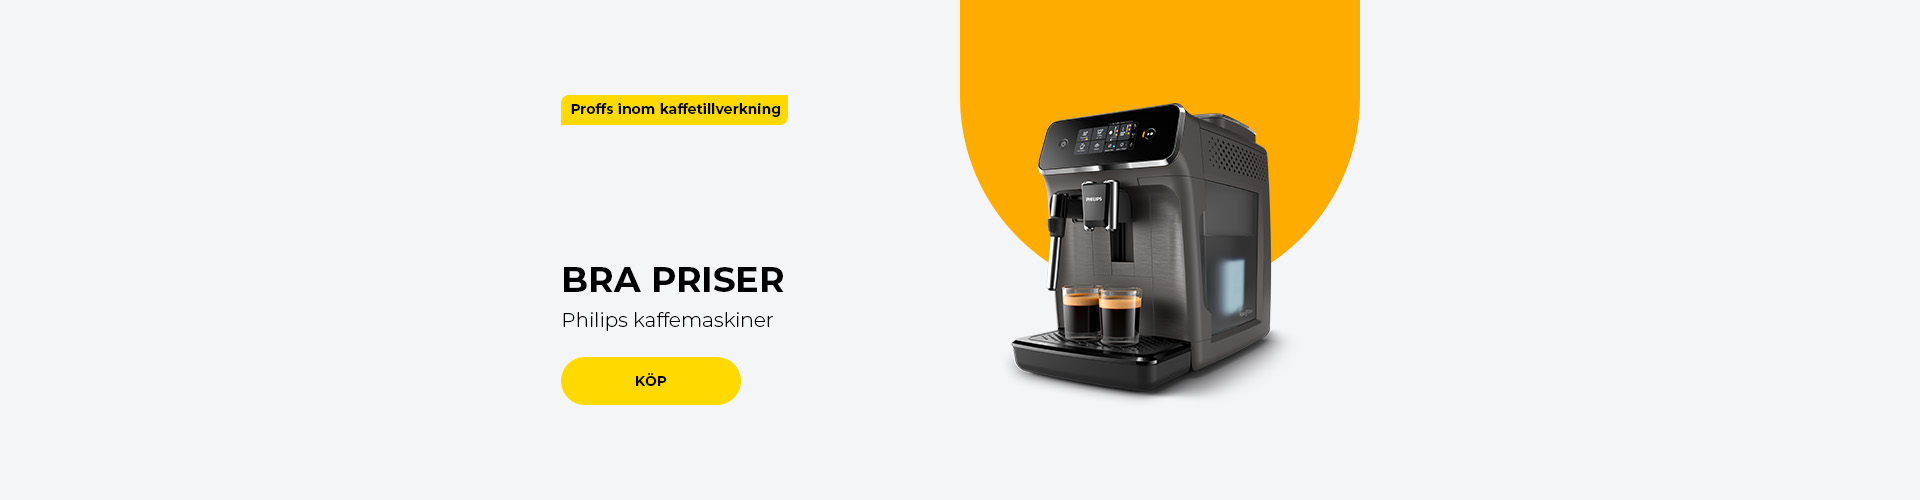 "BRA PRISER Philips kaffemaskiner"